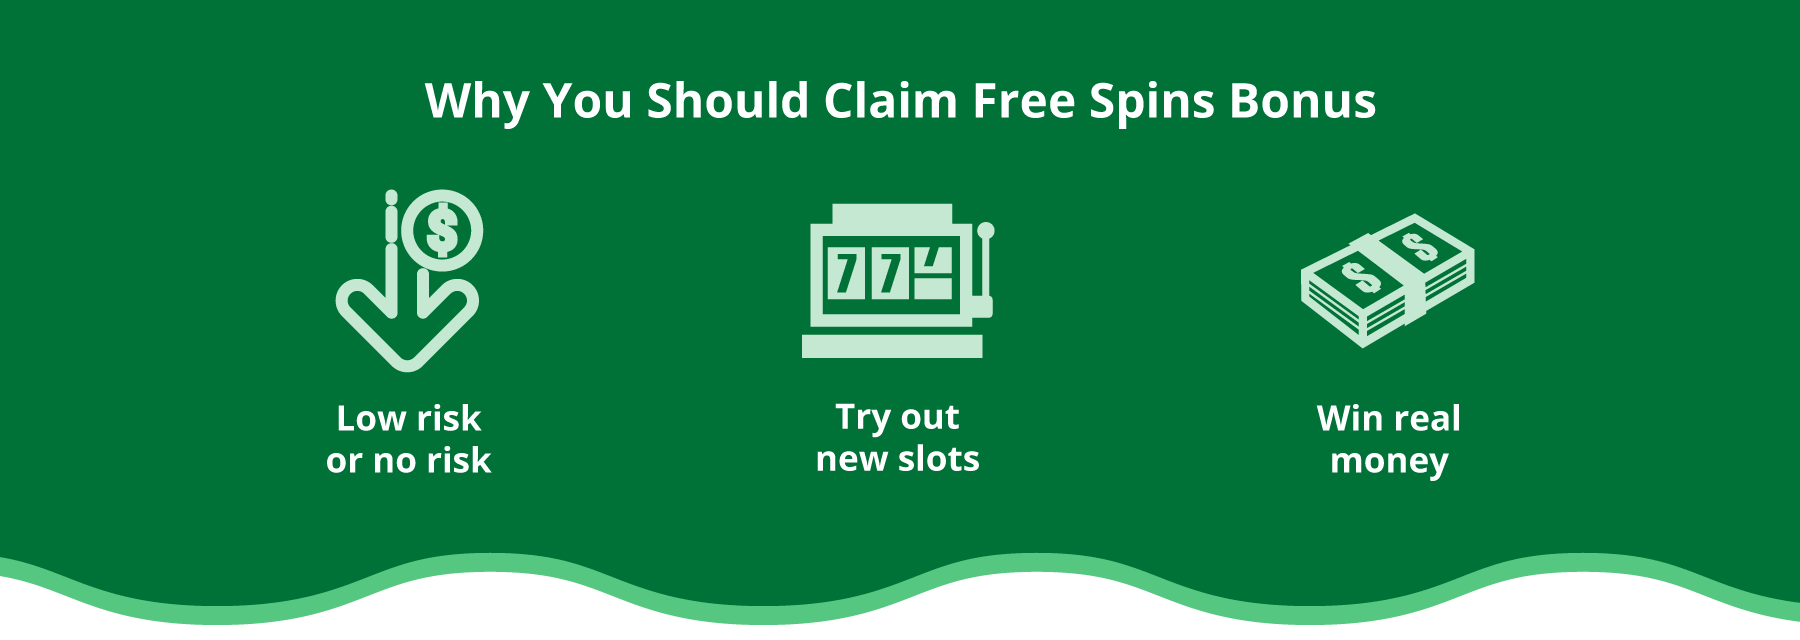 why claim free spins bonus